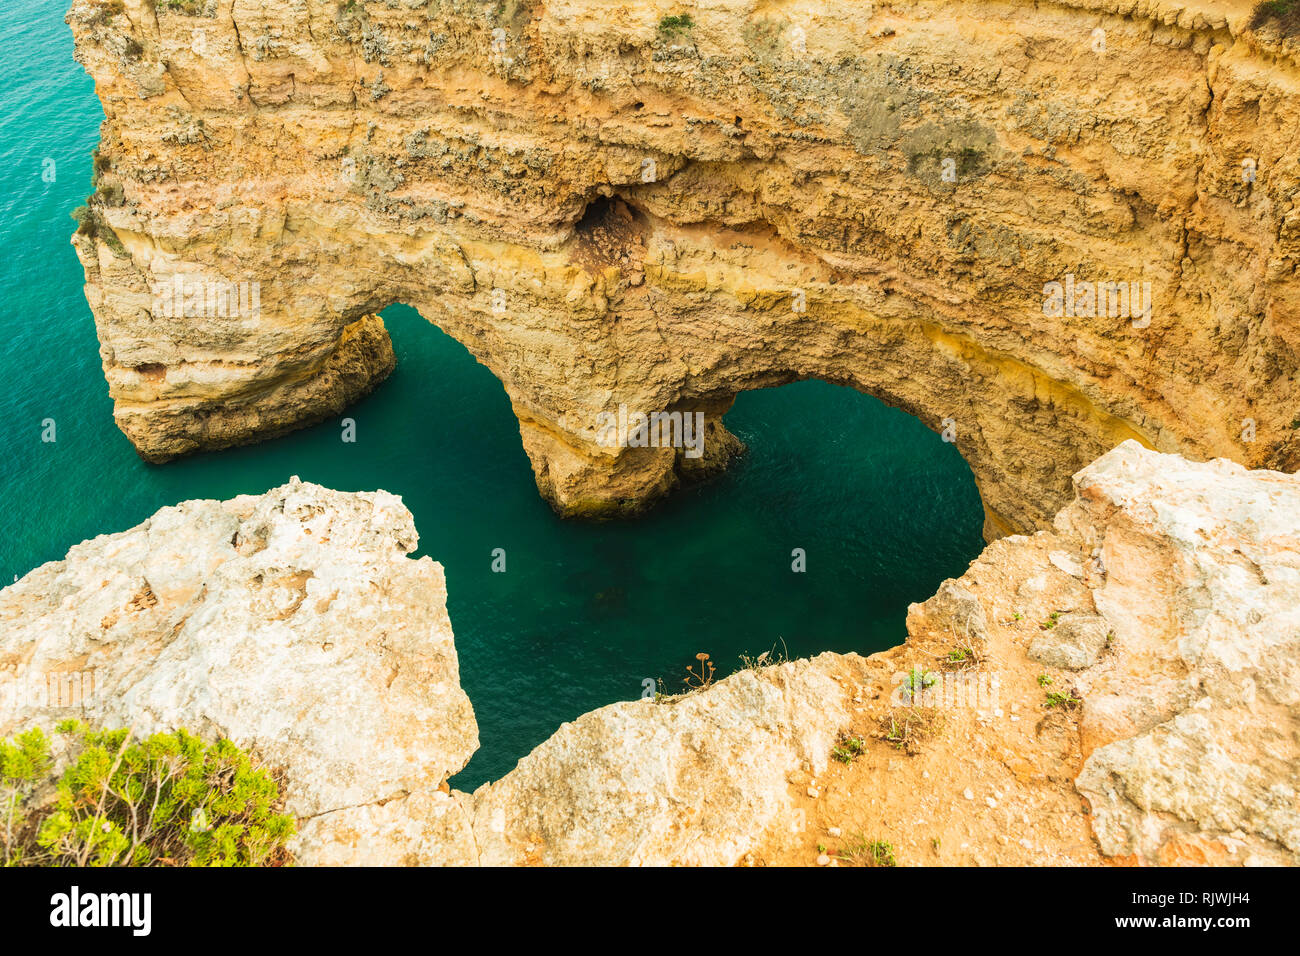 Natural arches underneath rugged cliffs, Praia da Marinha, Algarve, Portugal, Europe Stock Photo